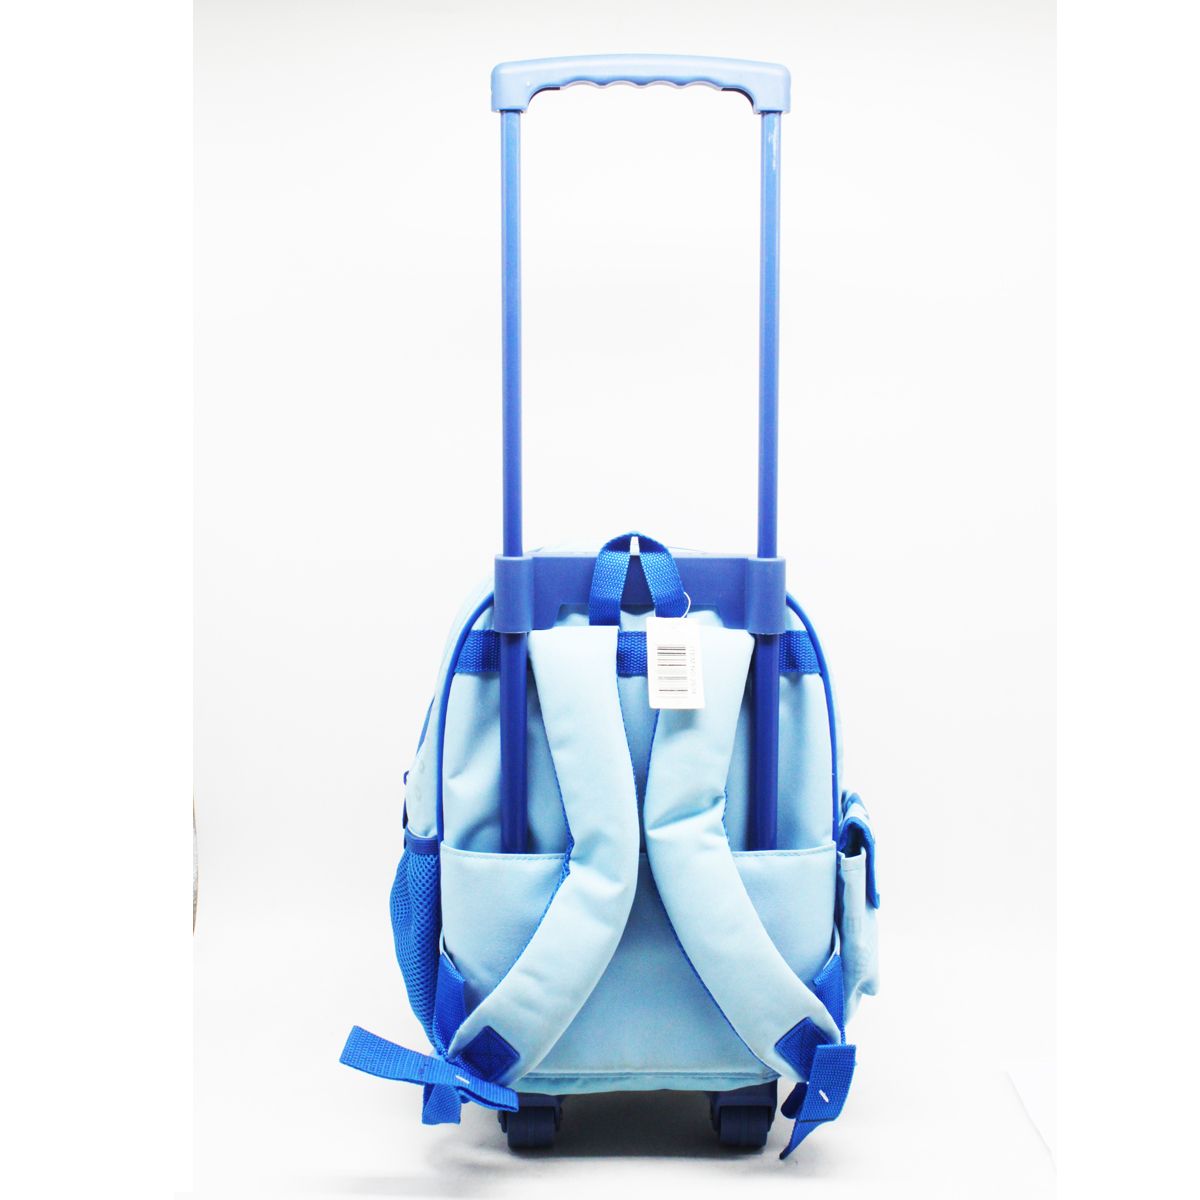 Детский рюкзак "Happy Travelin", голубой